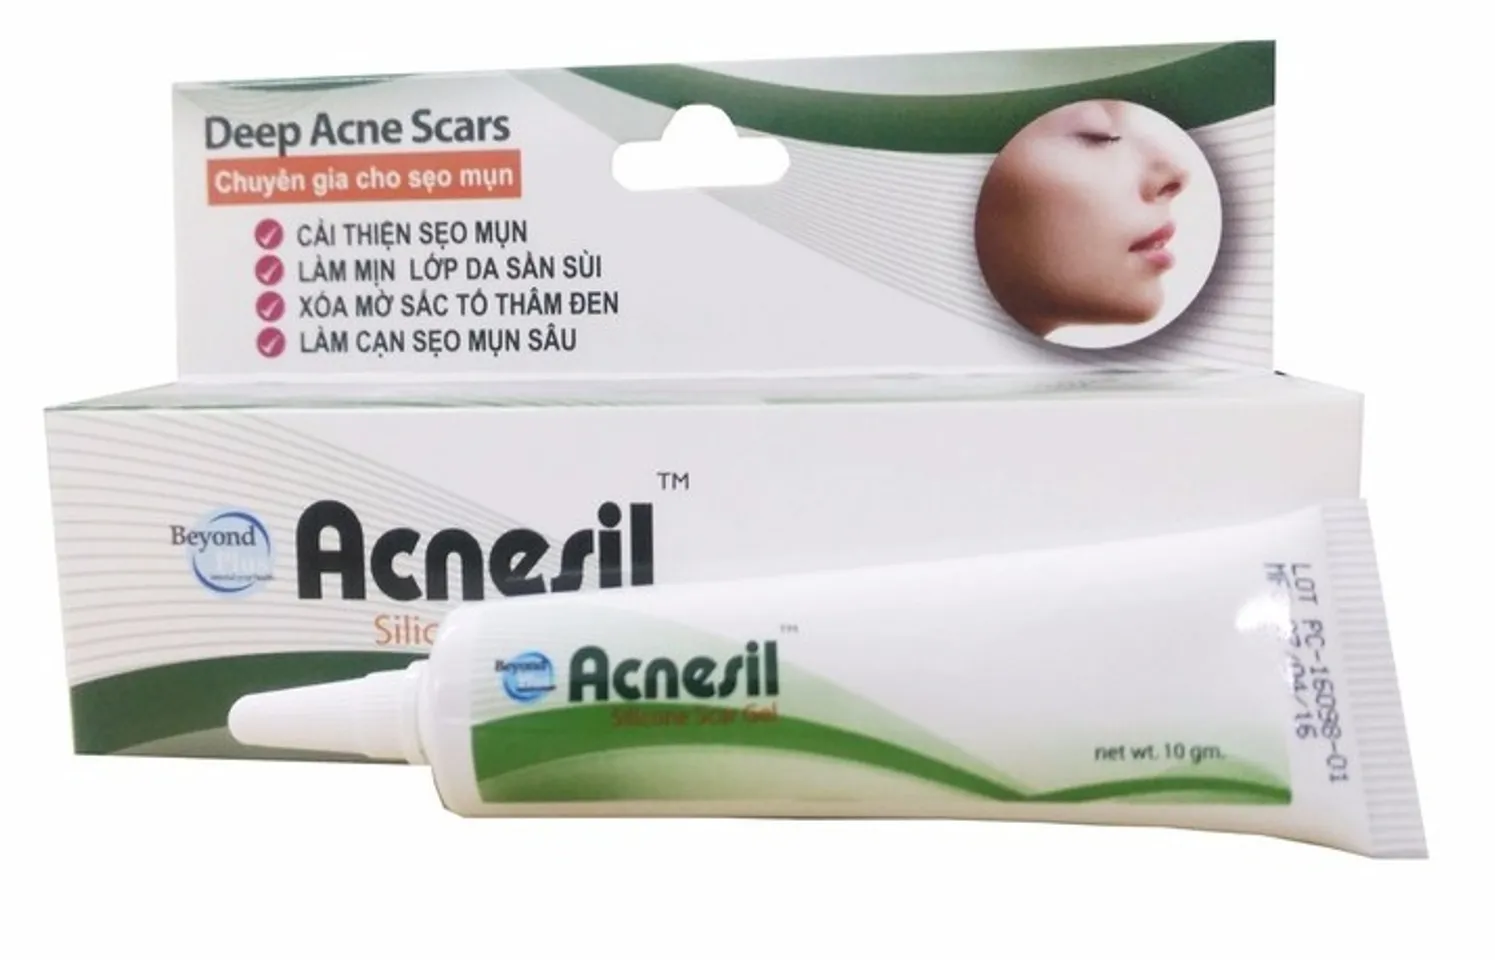 Acnesil giúp làm mịn lớp da sần do mụn gây nên, xóa mờ vết thâm do sẹo mụn để lại, làm sáng da